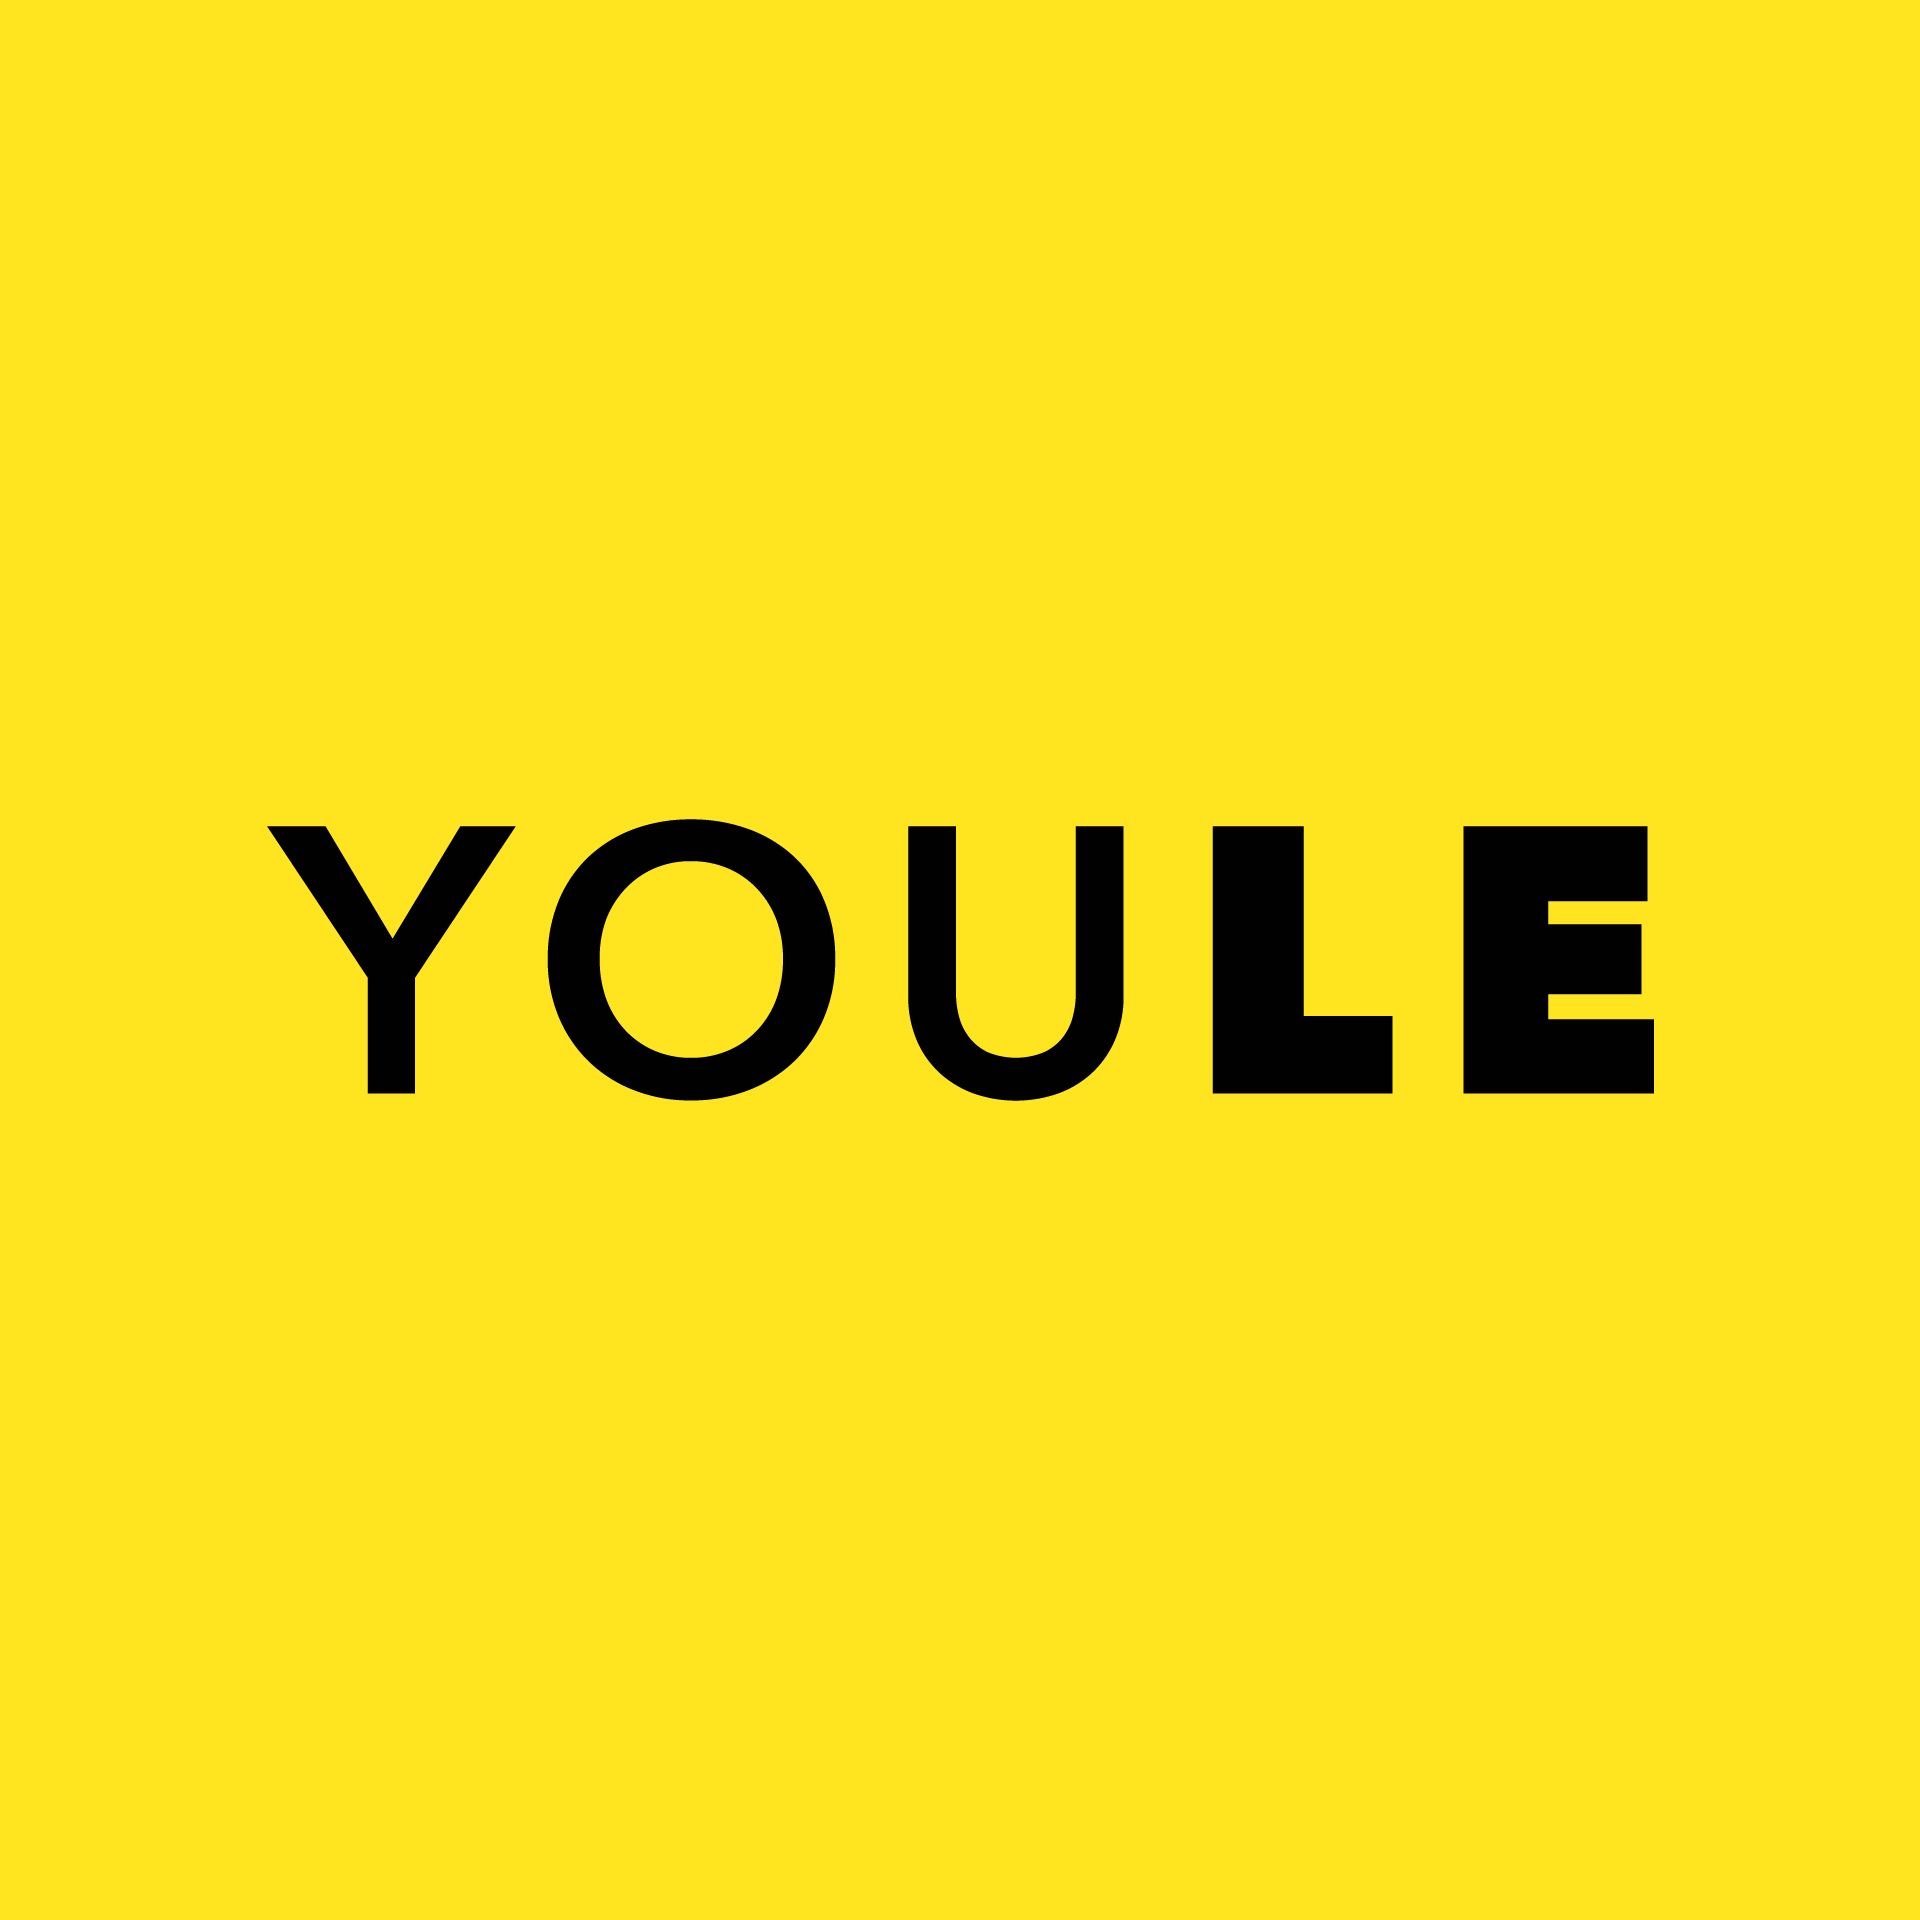 Die Wortmarke von YOULE: ein schwarzer Schriftzug auf gelbem Untergrund.